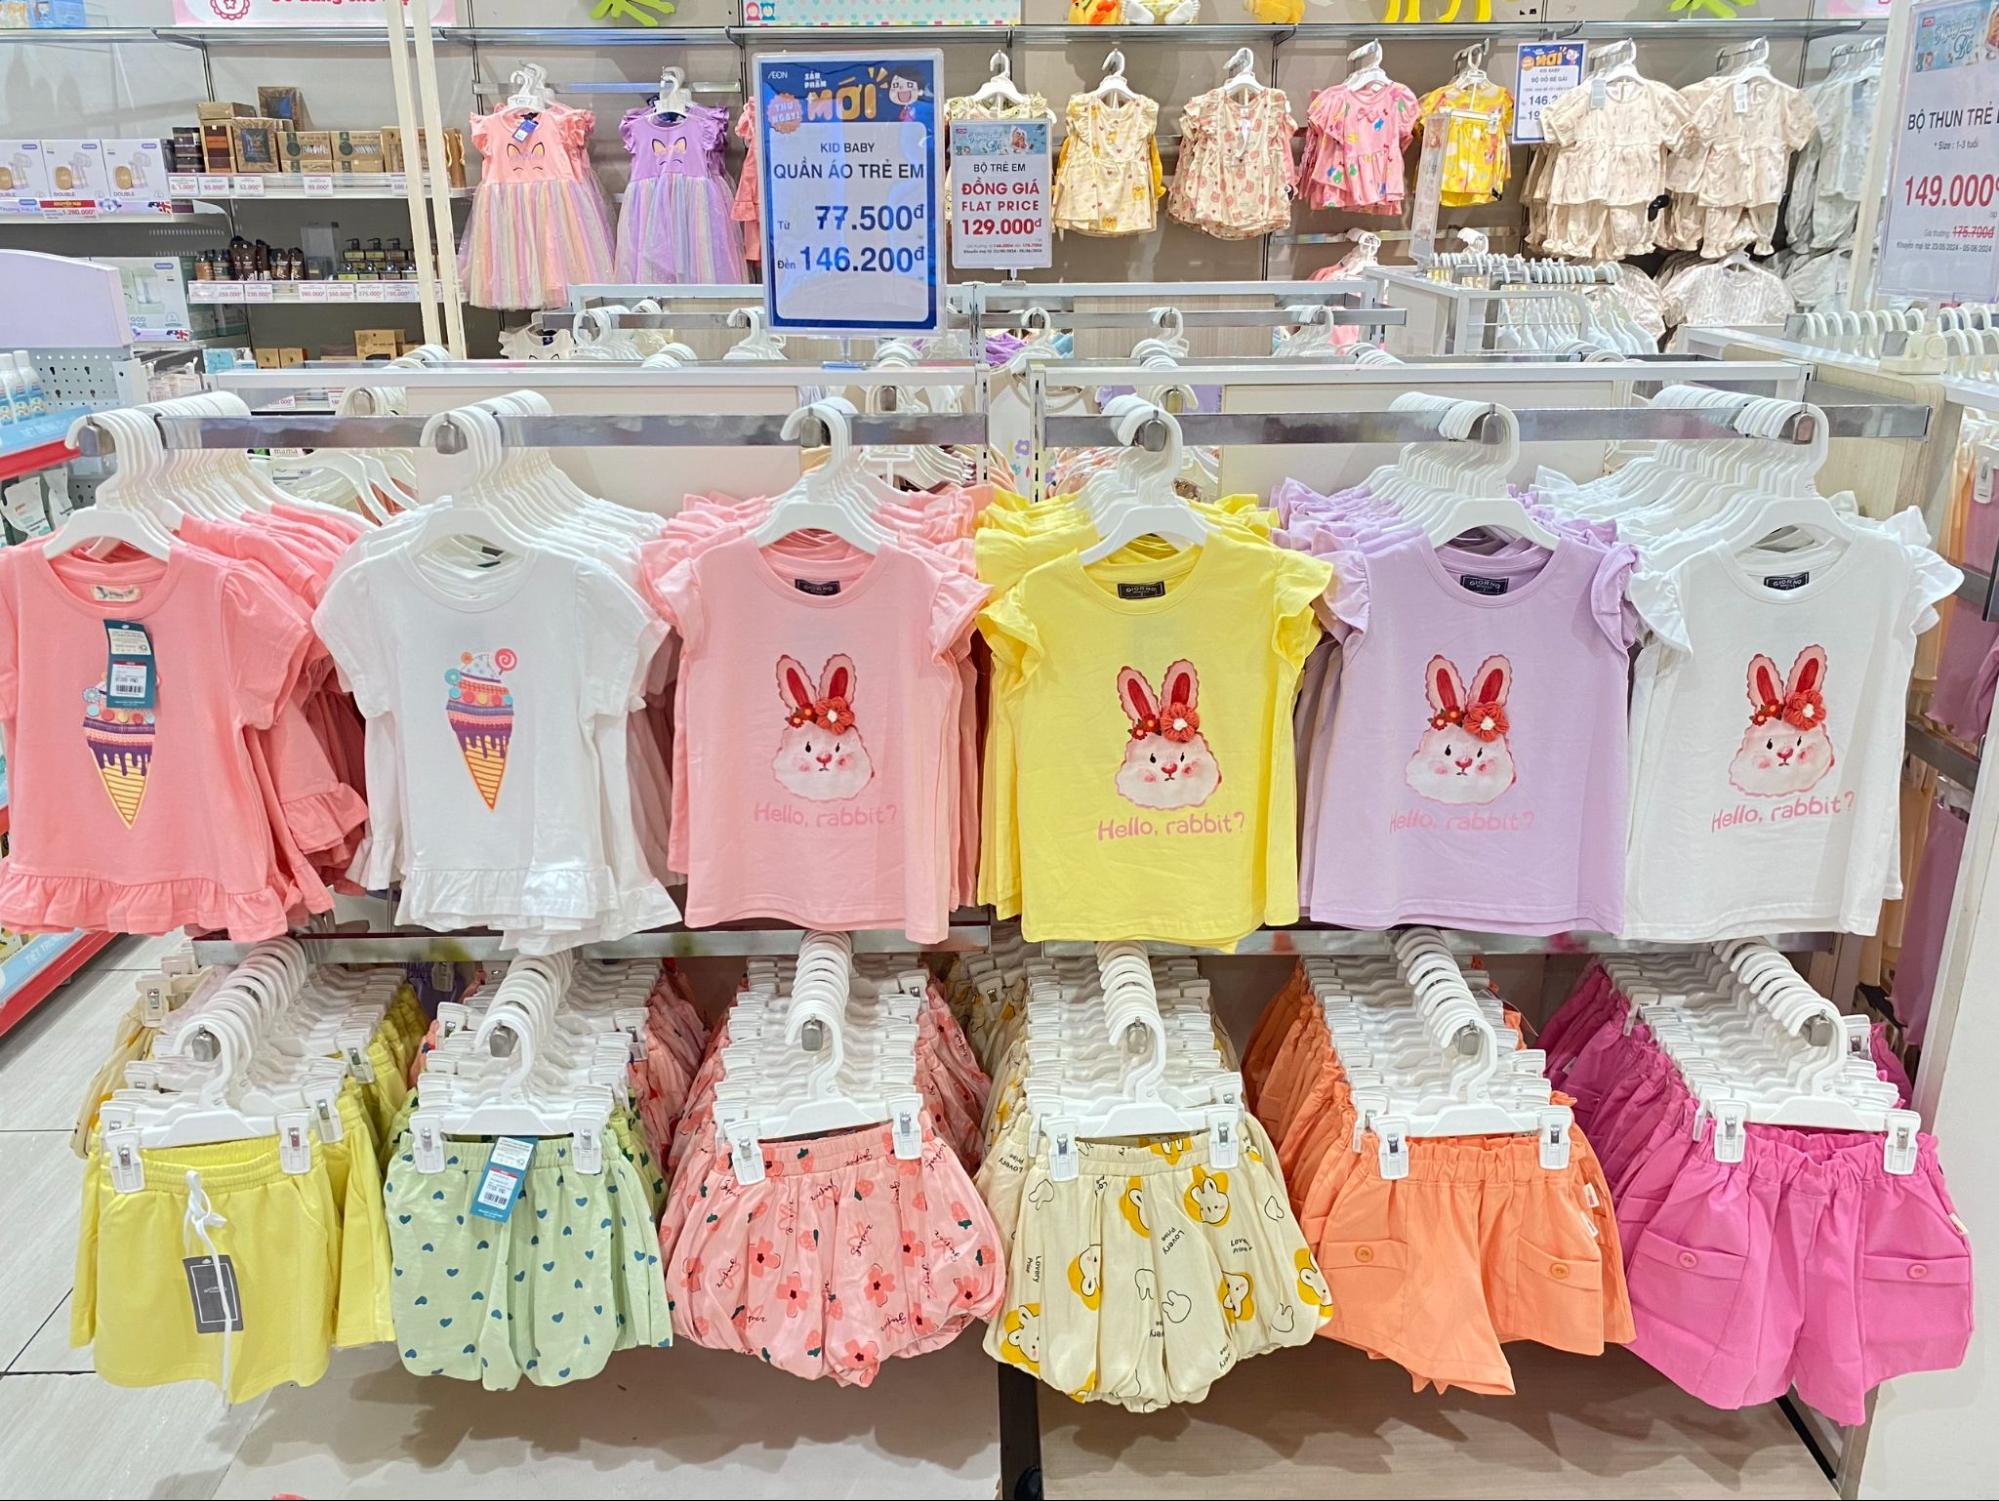 TTBHTH & Siêu thị AEON cung cấp đa dạng các sản phẩm quần áo cho trẻ em